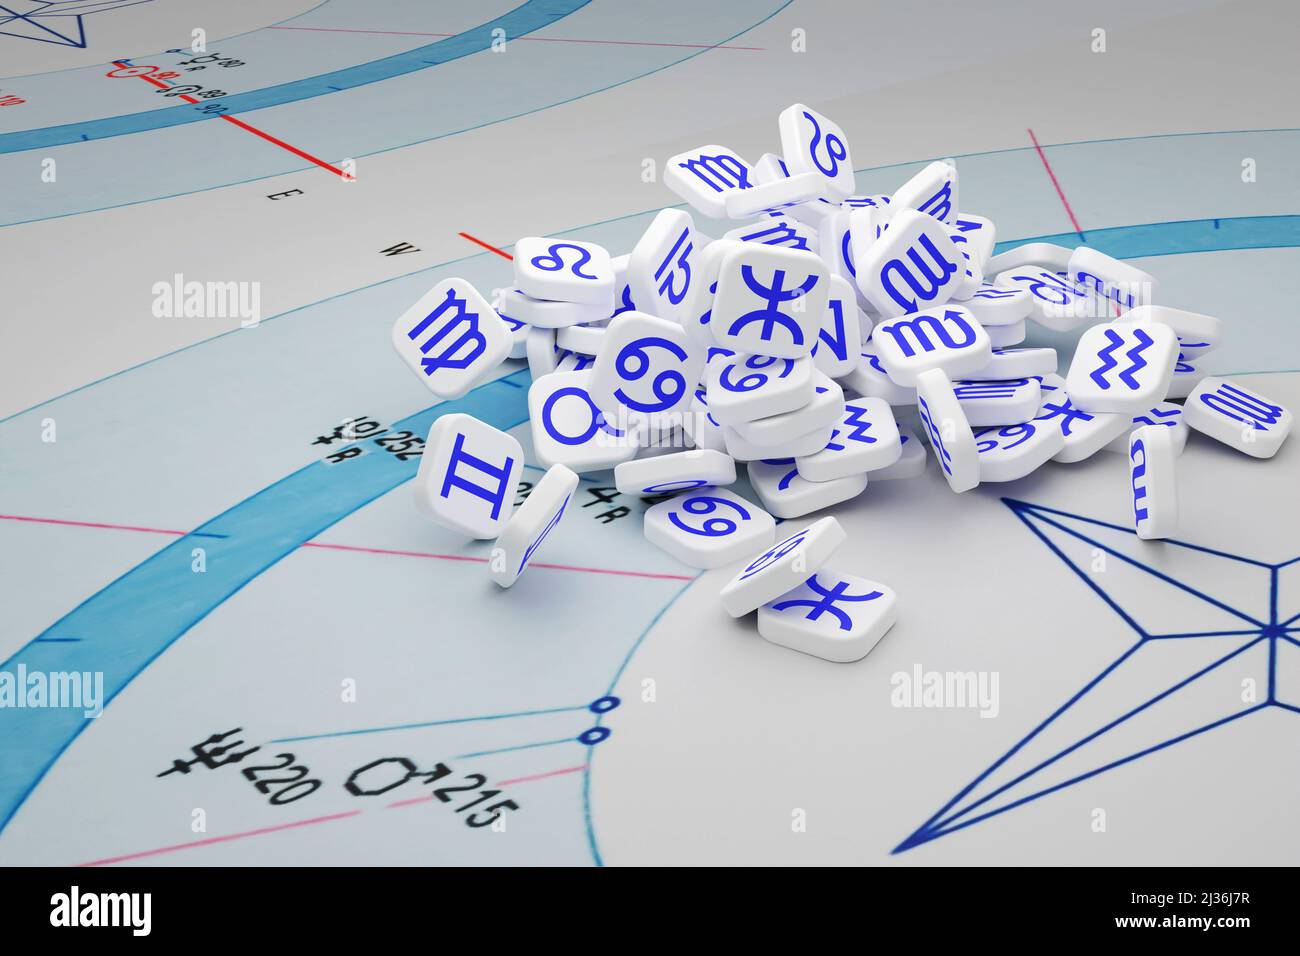 Un bouquet de tuiles blanches avec des icônes bleues des signes du zodiaque sur une carte astrologique. Banque D'Images